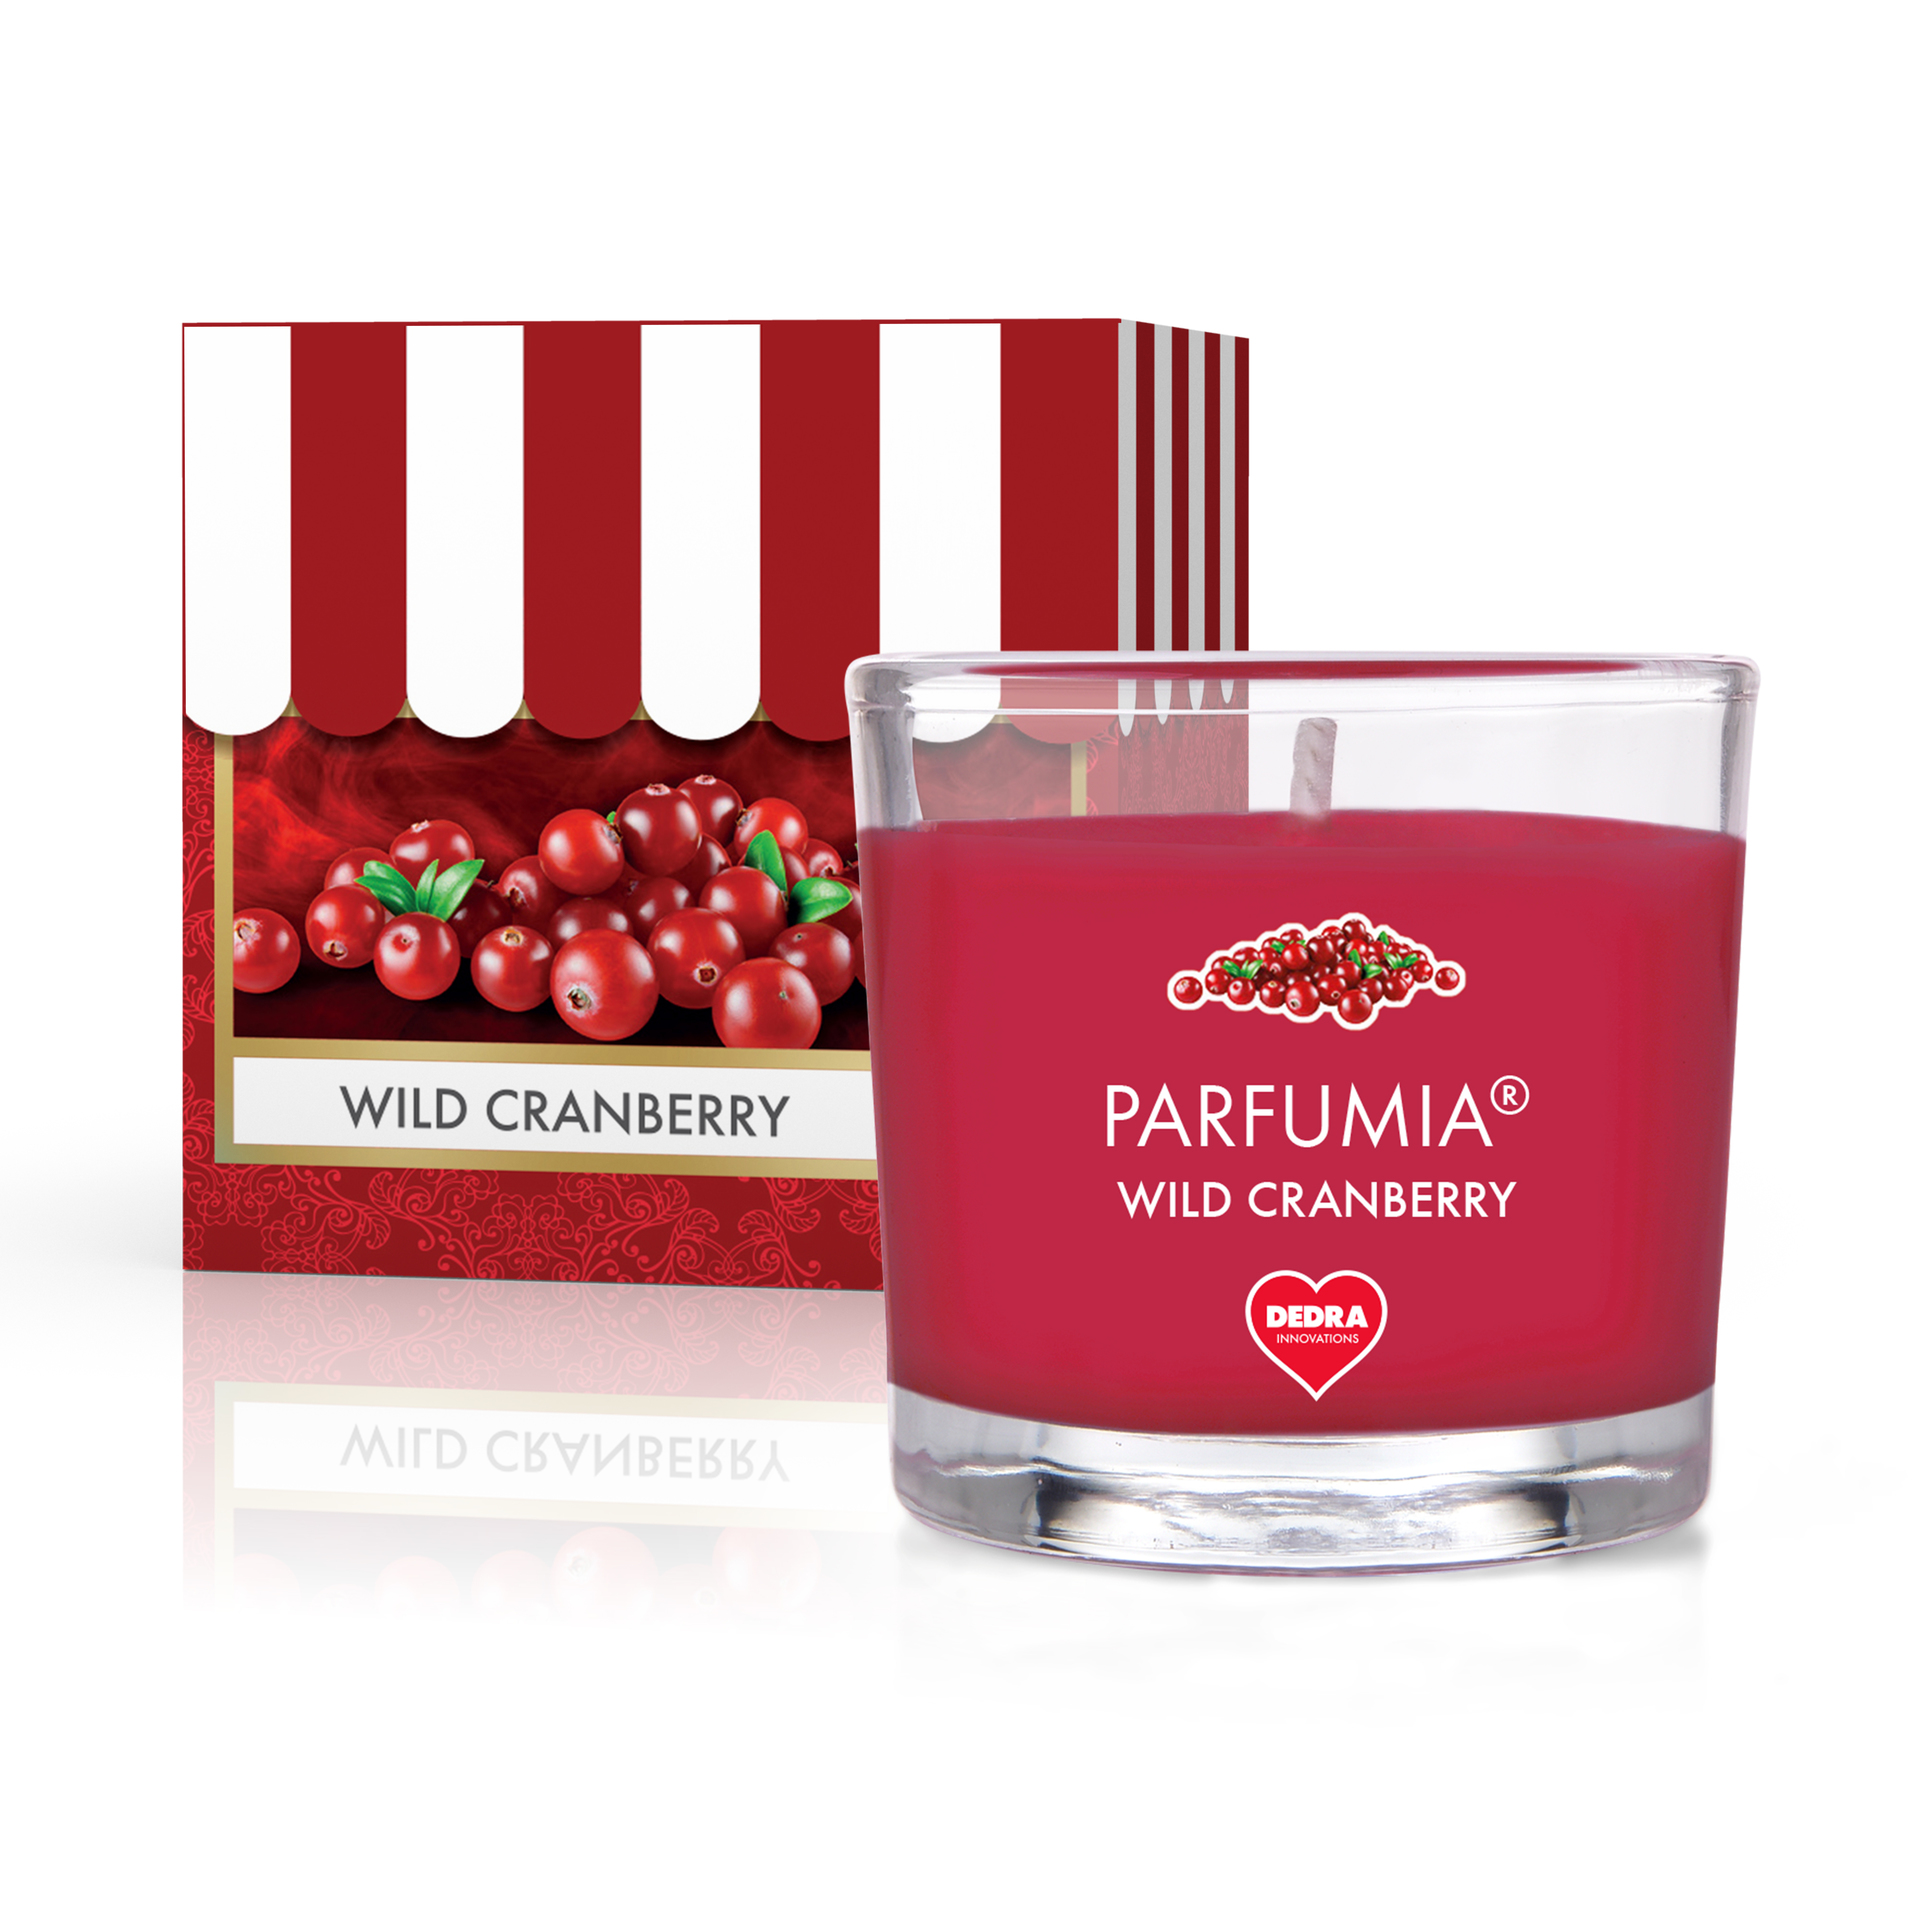 55 ml votivní sójová eko-svíce, Wild cranberry, Parfumia